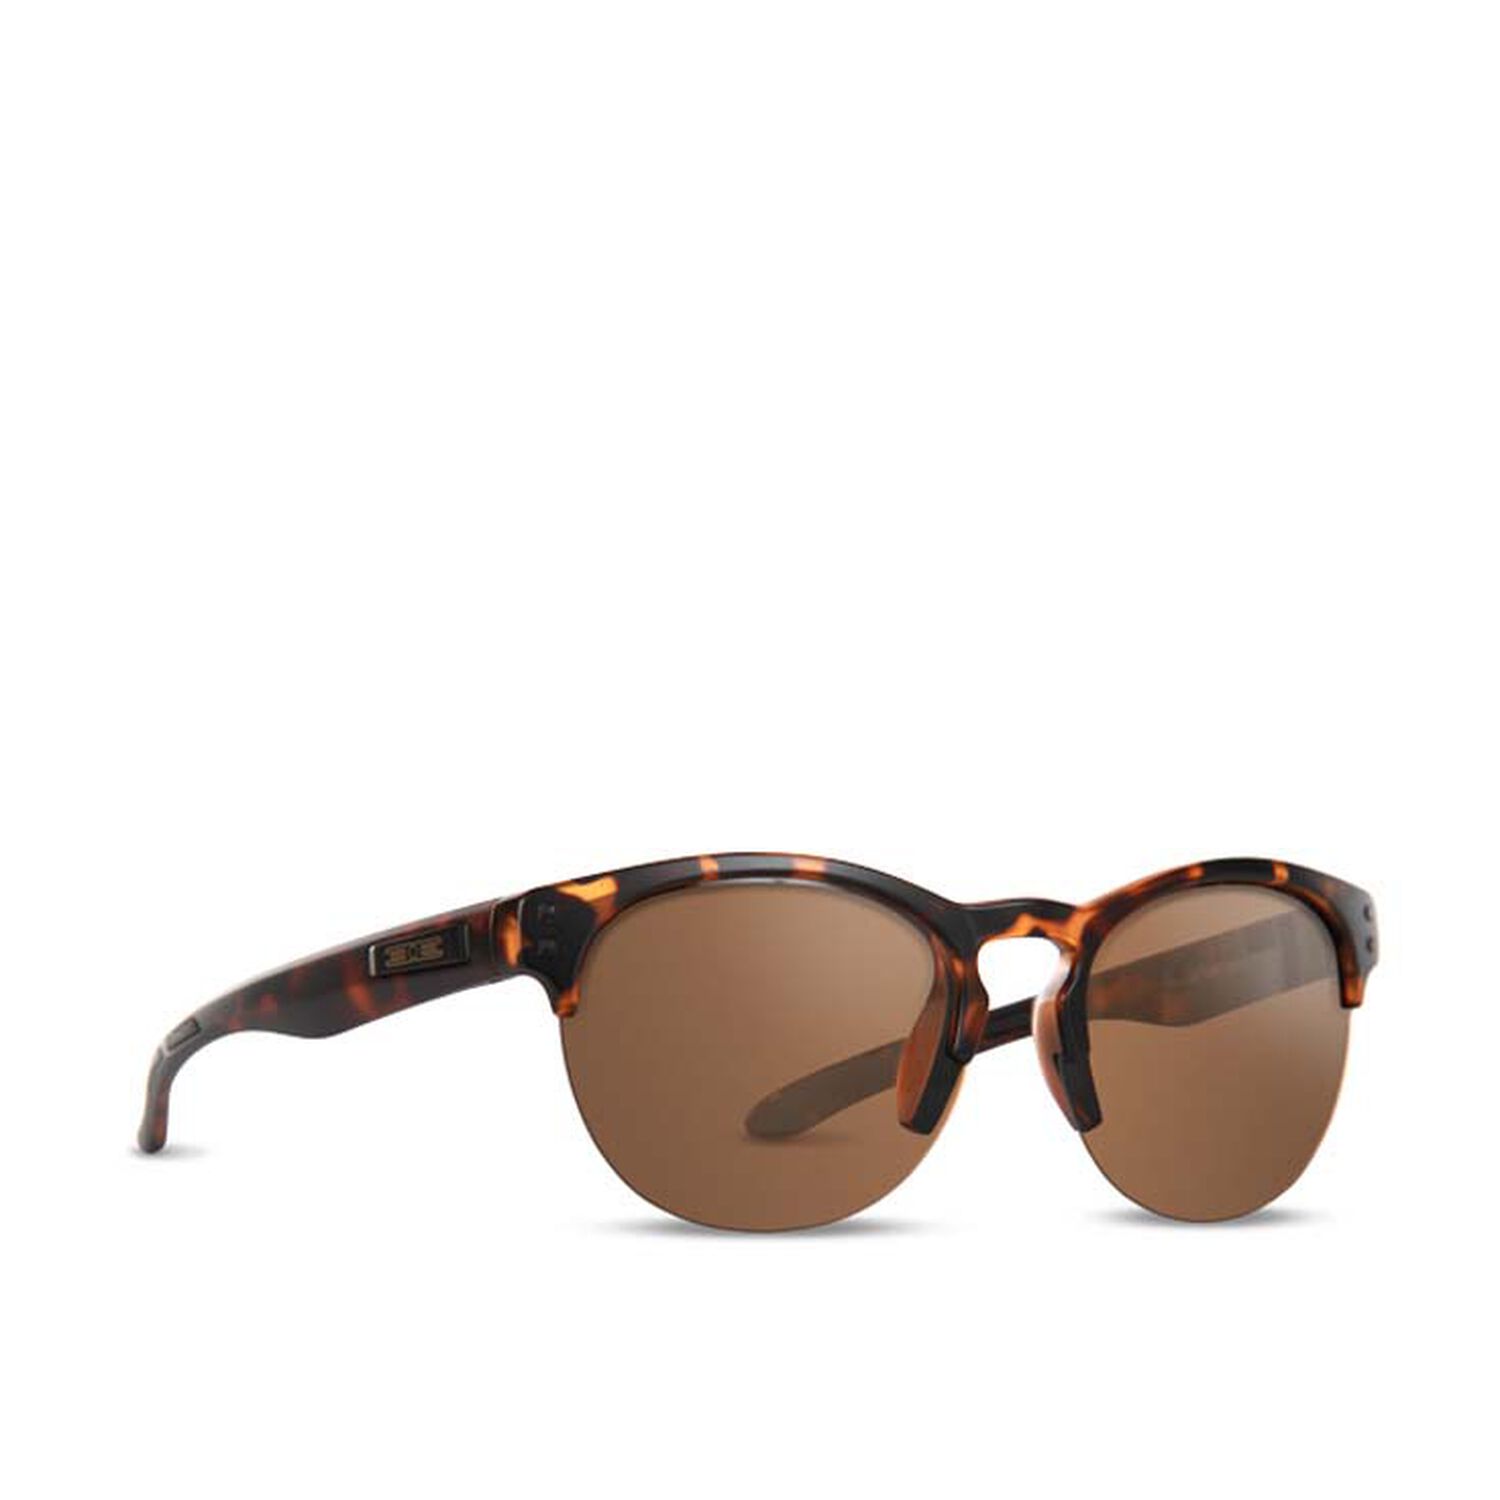 Sierra Sunglasses Tortoise Frames Brown Shatterproof Lenses  | GNC